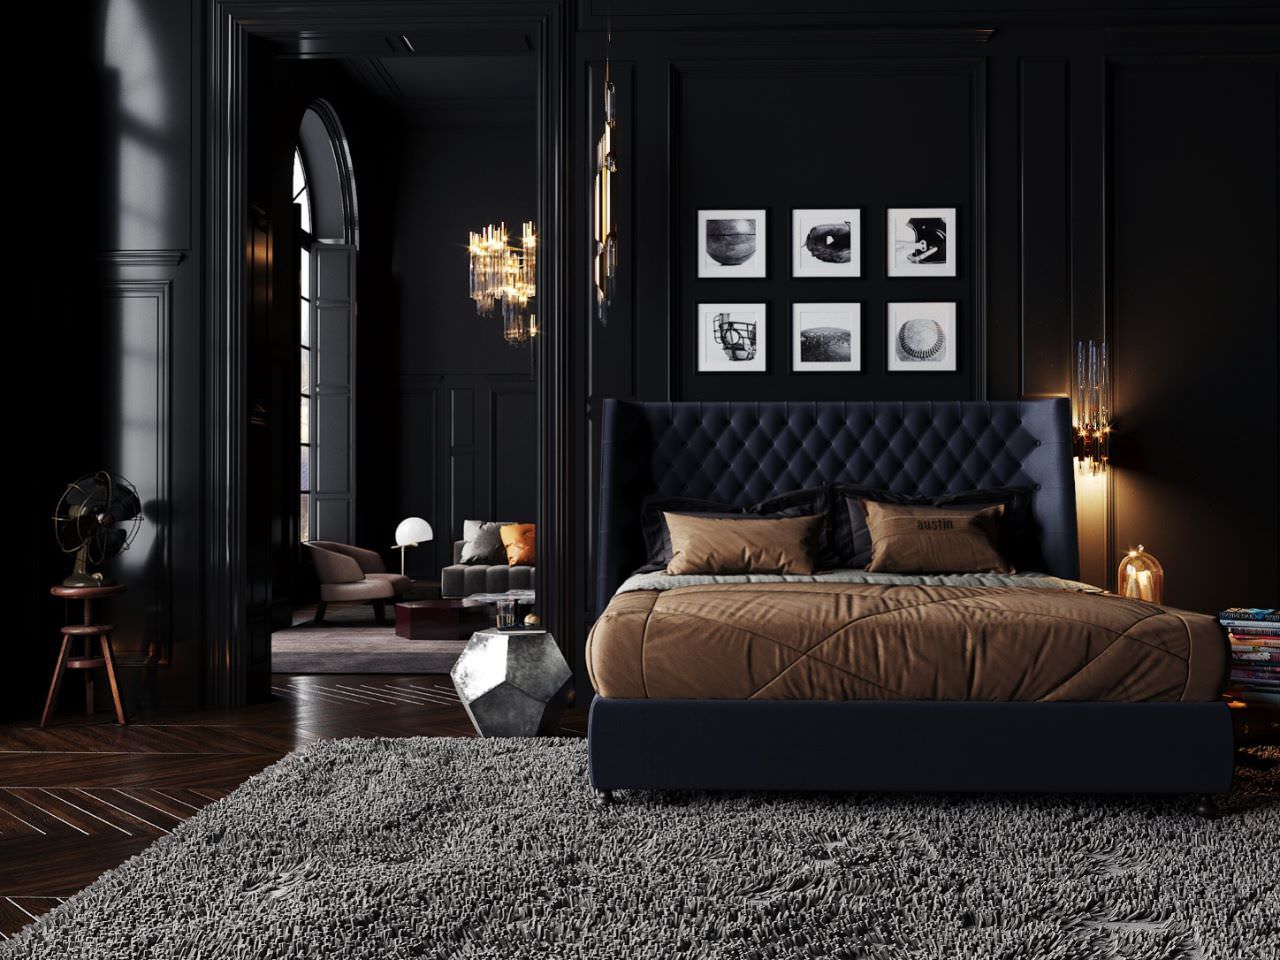 Phòng ngủ 30m2 màu đen huyền ảo làm tôn lên vẻ đẹp của các món nội thất cao cấp